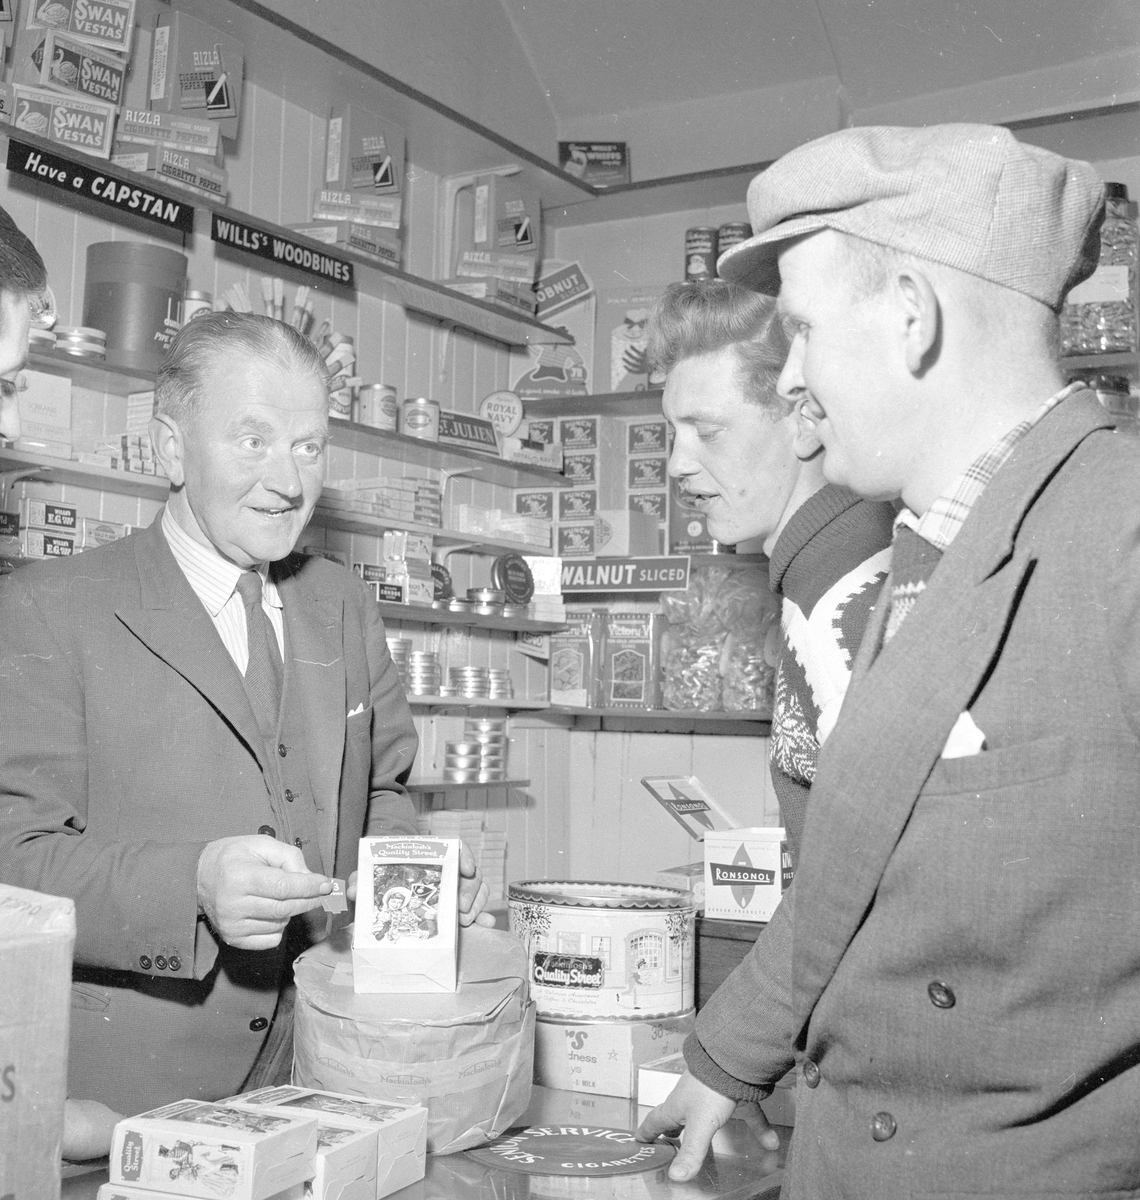 Pigghåfiske på Shetland.
Shetland, 14-22. mai 1958, handling i butikken, kunder og innehaver.